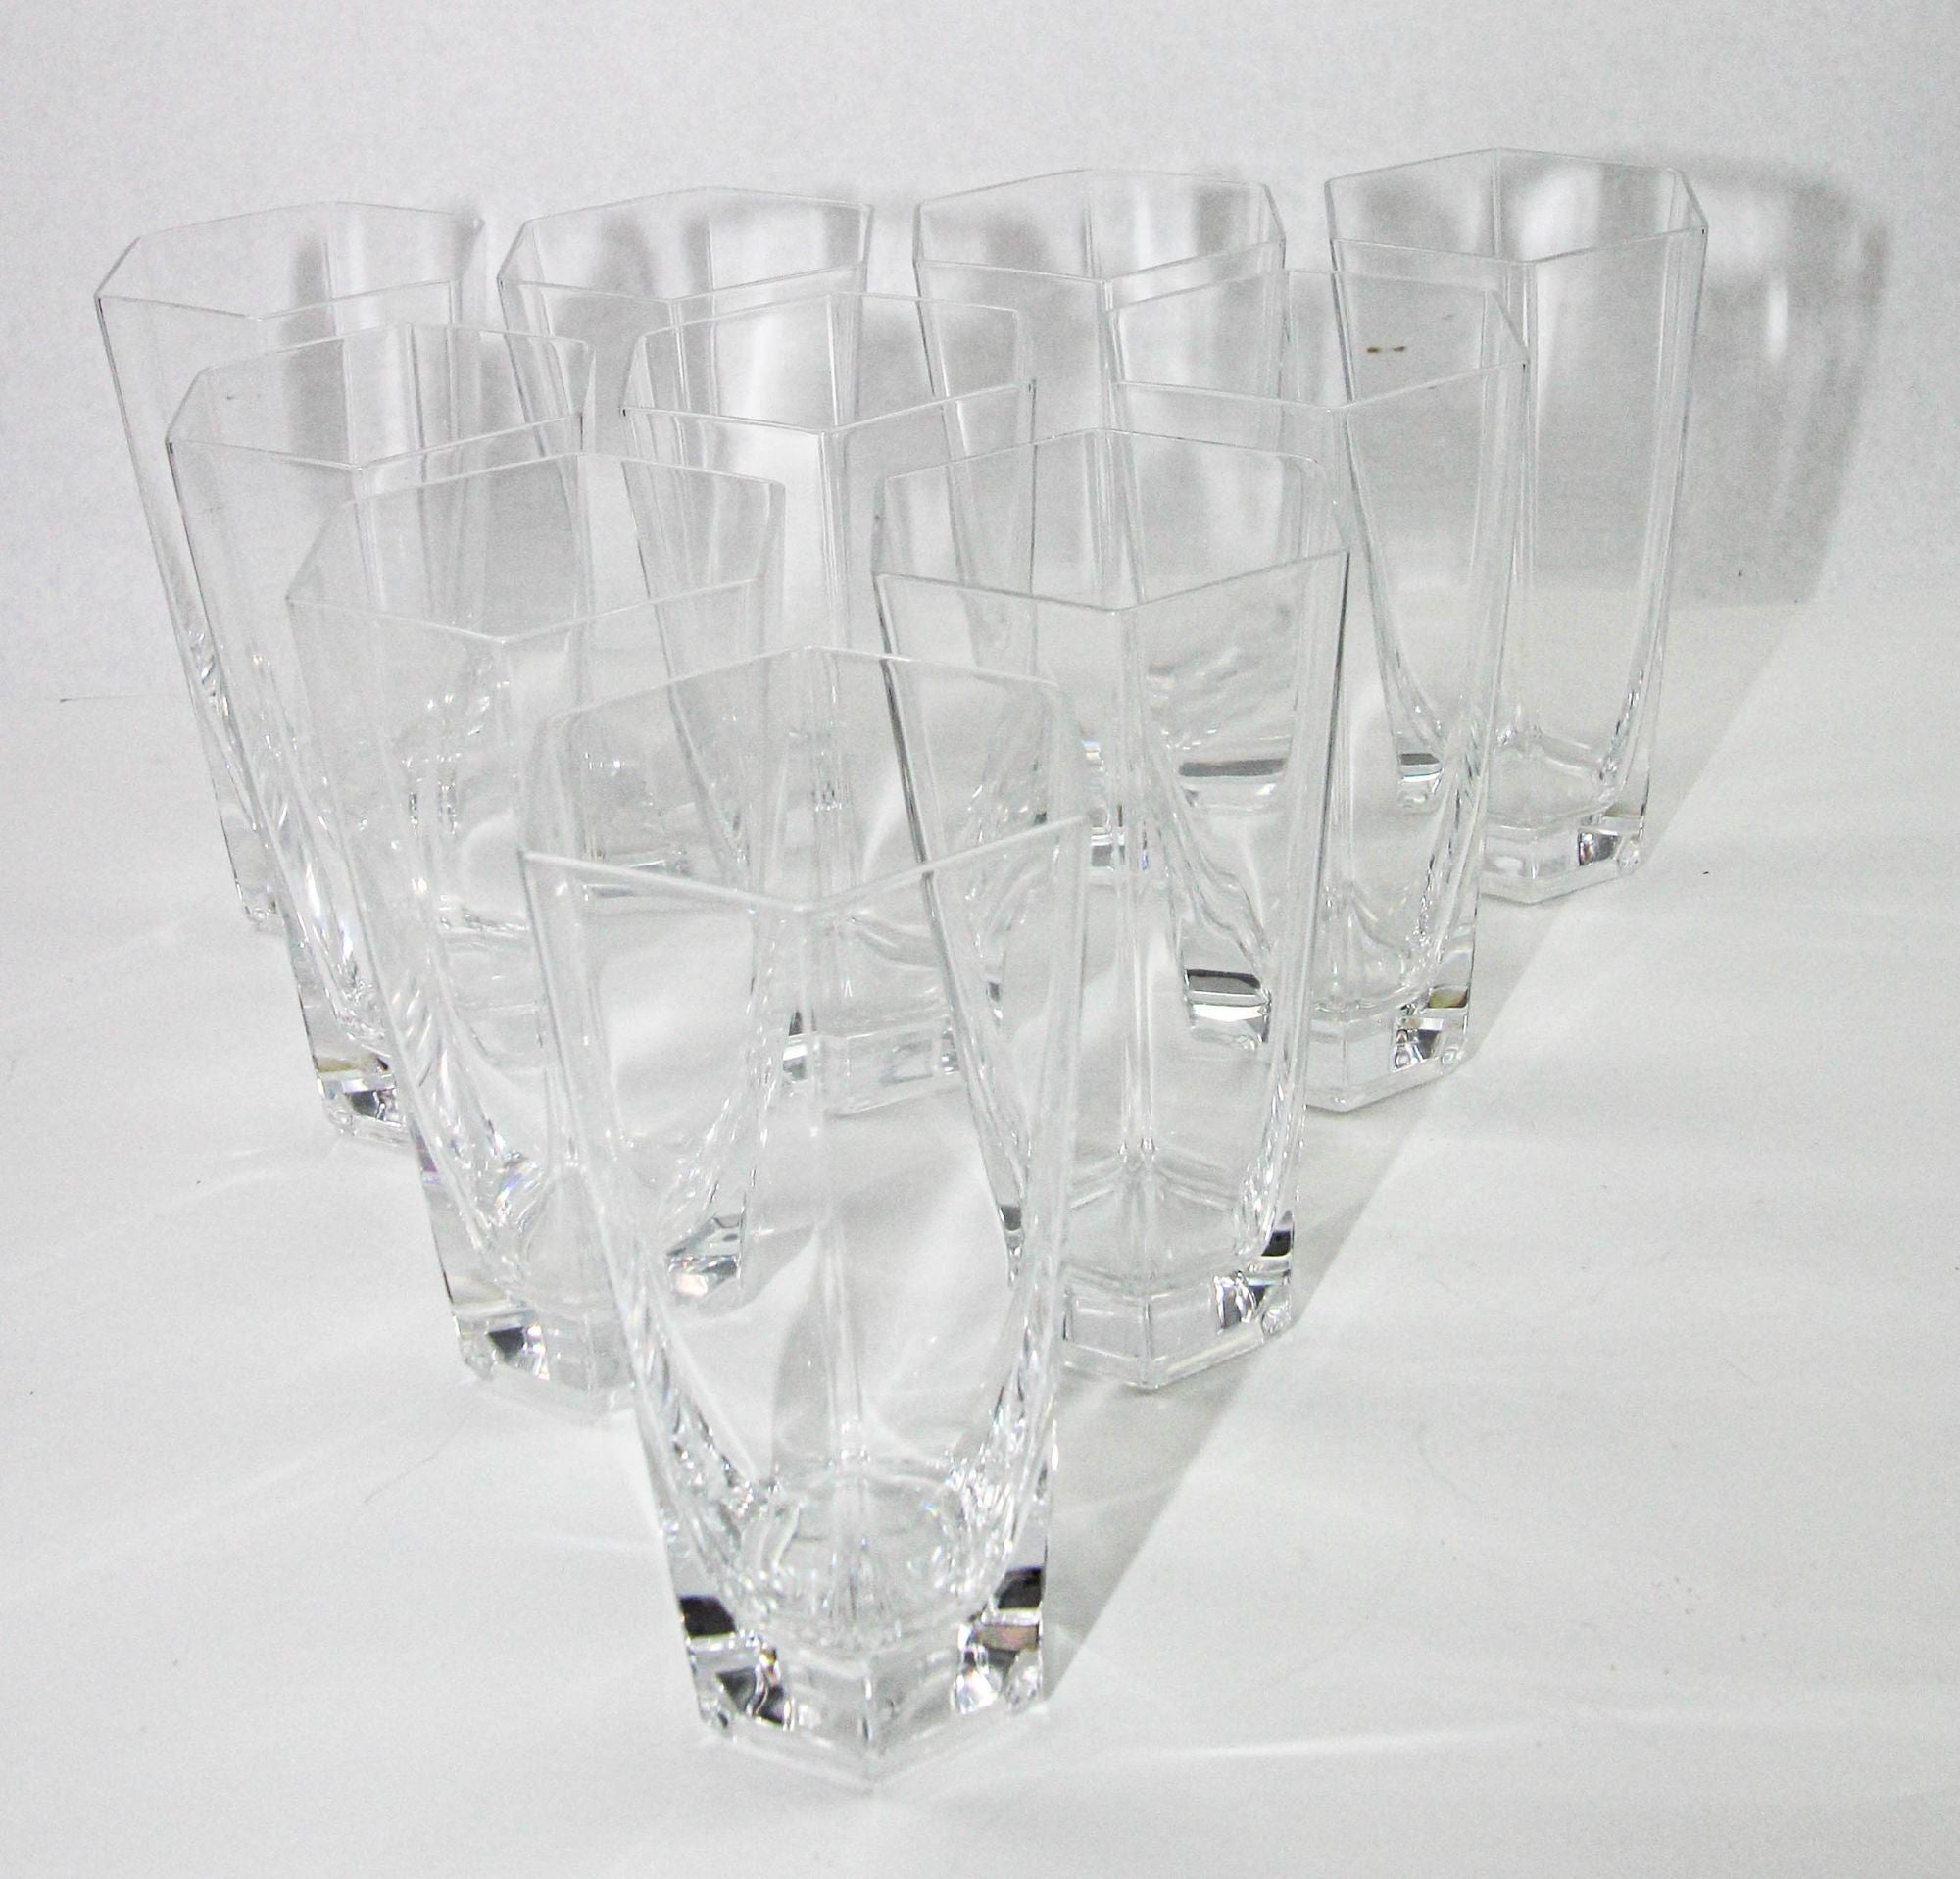 Sehr selten zu findender Satz von acht exquisiten Highball-Trinkgläsern aus Kristall von Tiffany & Co., inspiriert von der architektonischen Brillanz von Frank Lloyd Wright (Amerikaner, 1867 - 1959). 
Jedes Glas dieser Kollektion wurde um 1986